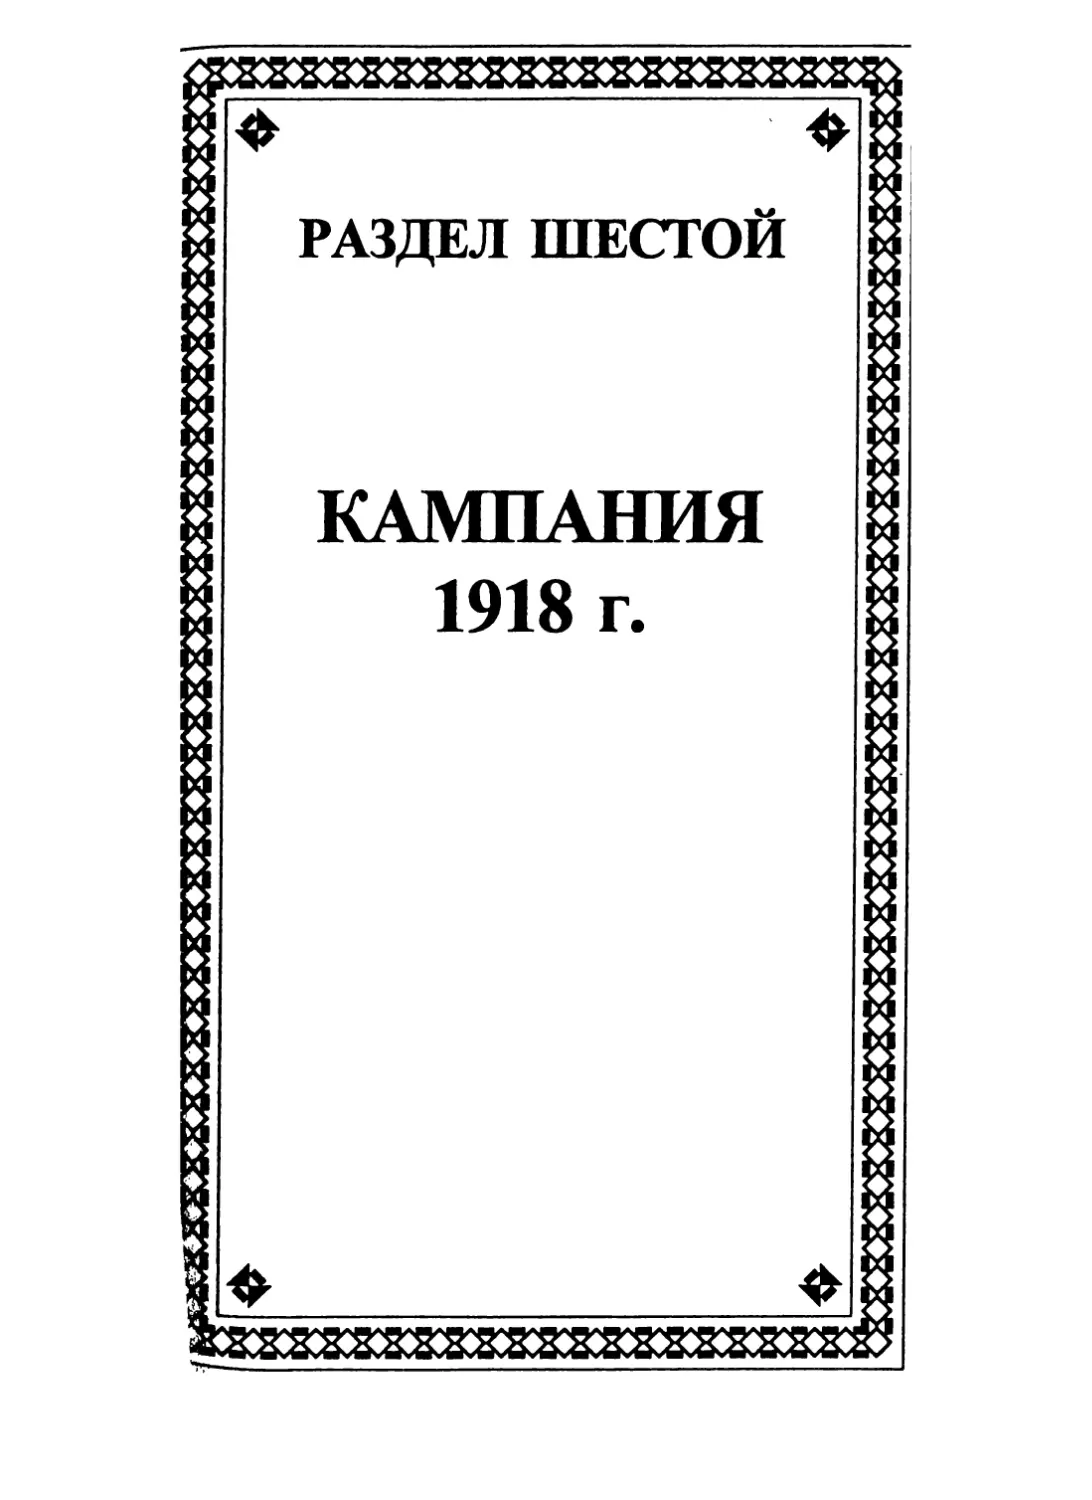 РАЗДЕЛ ШЕСТОЙ. КАМПАНИЯ 1918 г